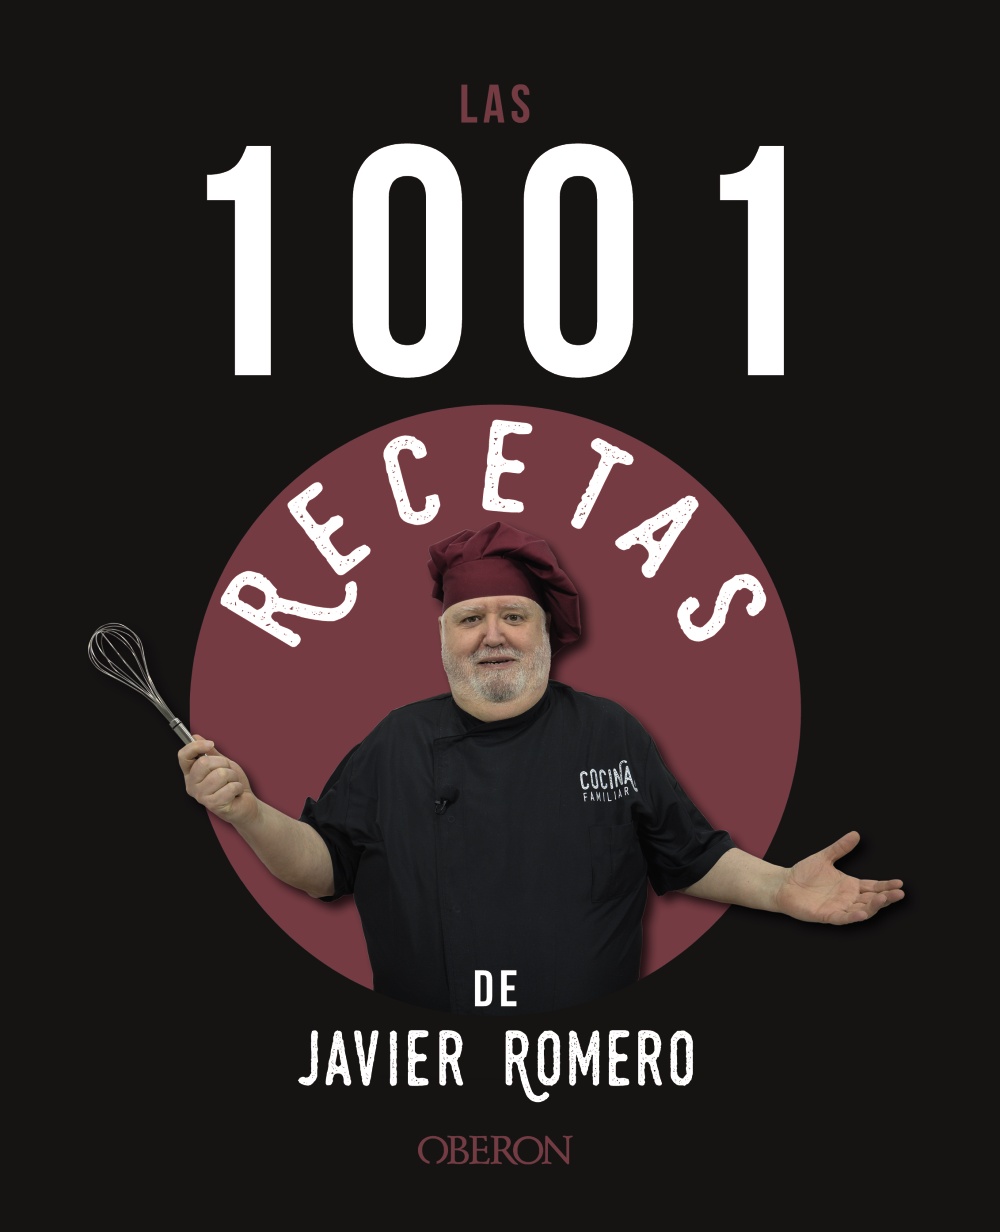 Las 1001 recetas de Javier Romero -   